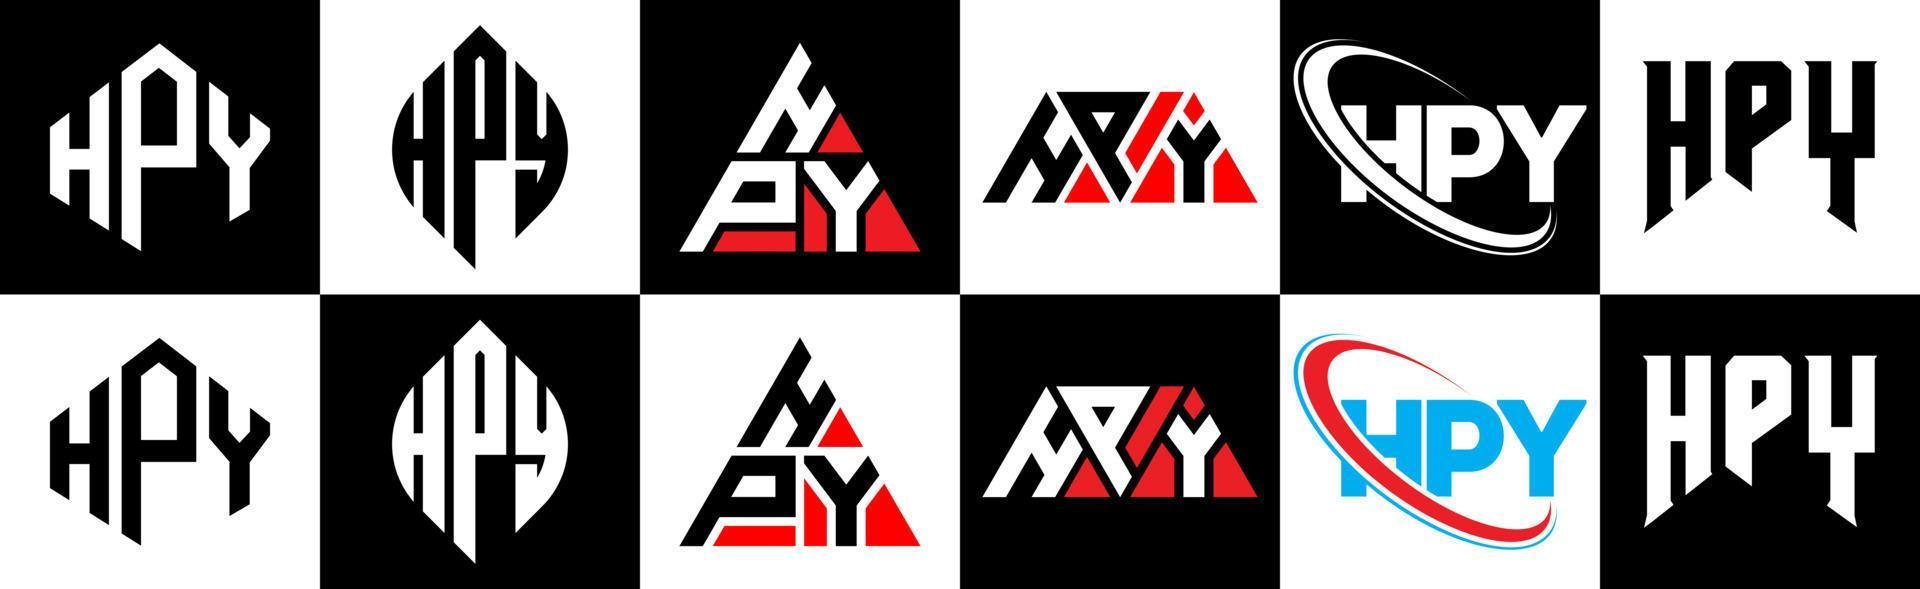 hpy lettera logo design nel sei stile. hpy poligono, cerchio, triangolo, esagono, piatto e semplice stile con nero e bianca colore variazione lettera logo impostato nel uno tavola da disegno. hpy minimalista e classico logo vettore